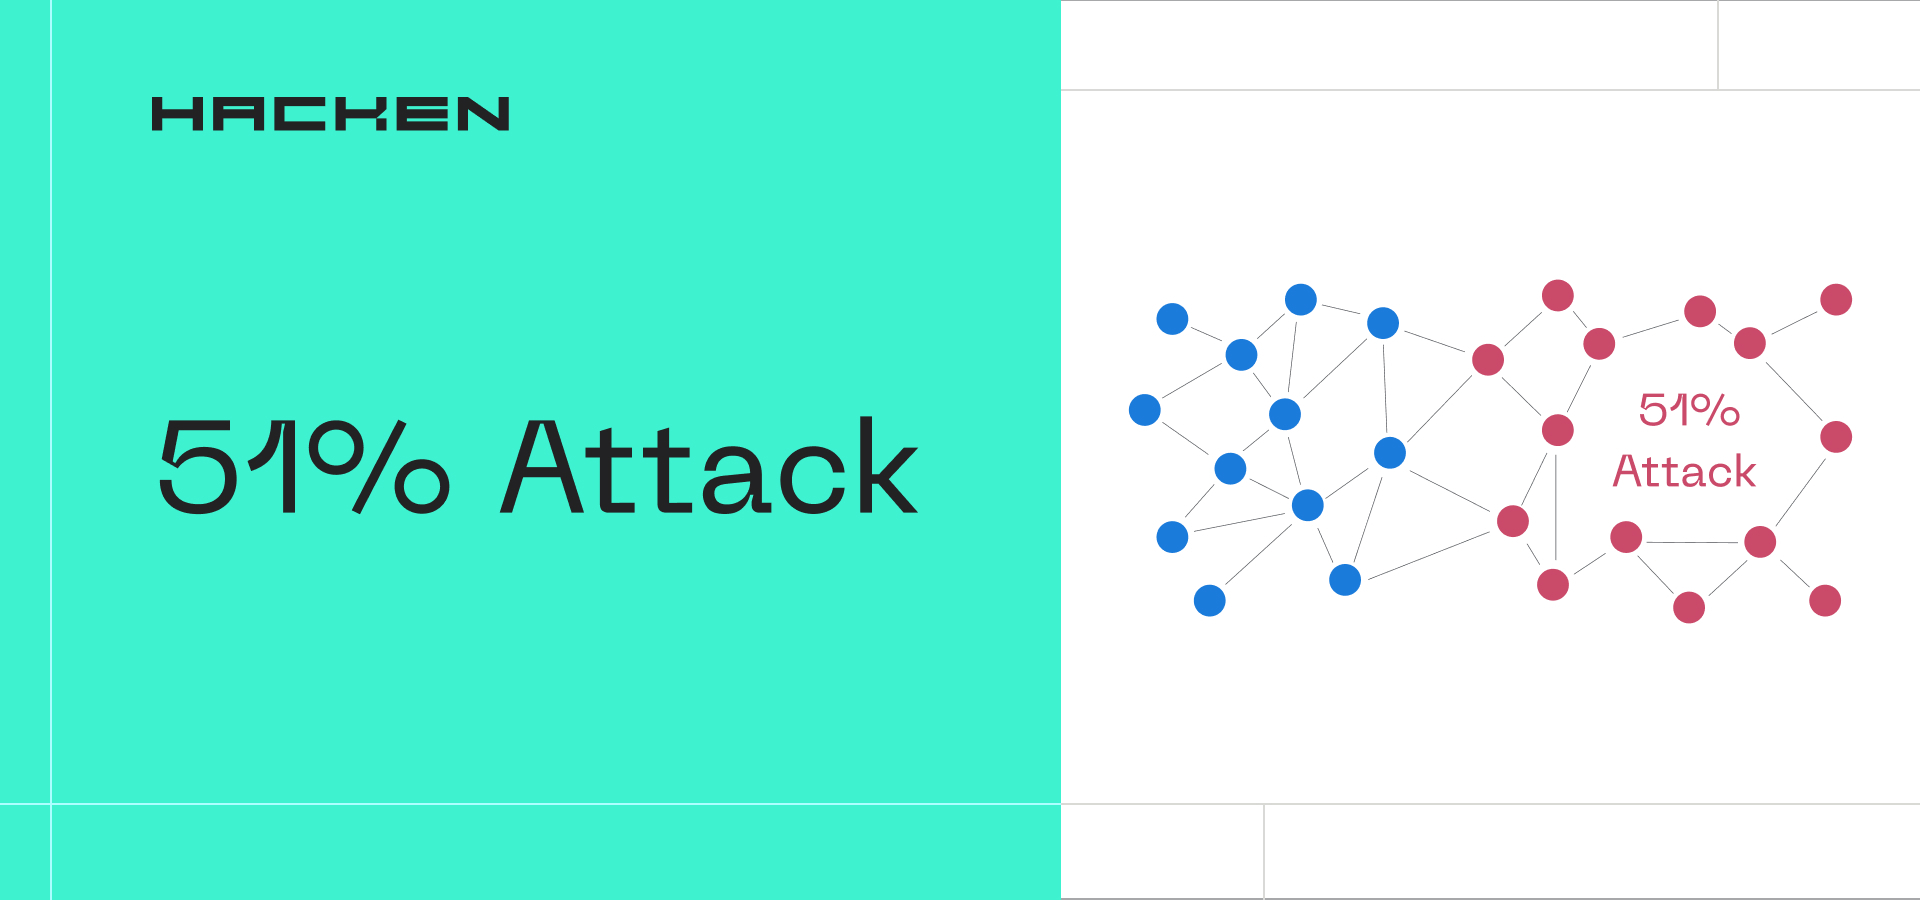 51% Attack: The Concept, Risks & Prevention